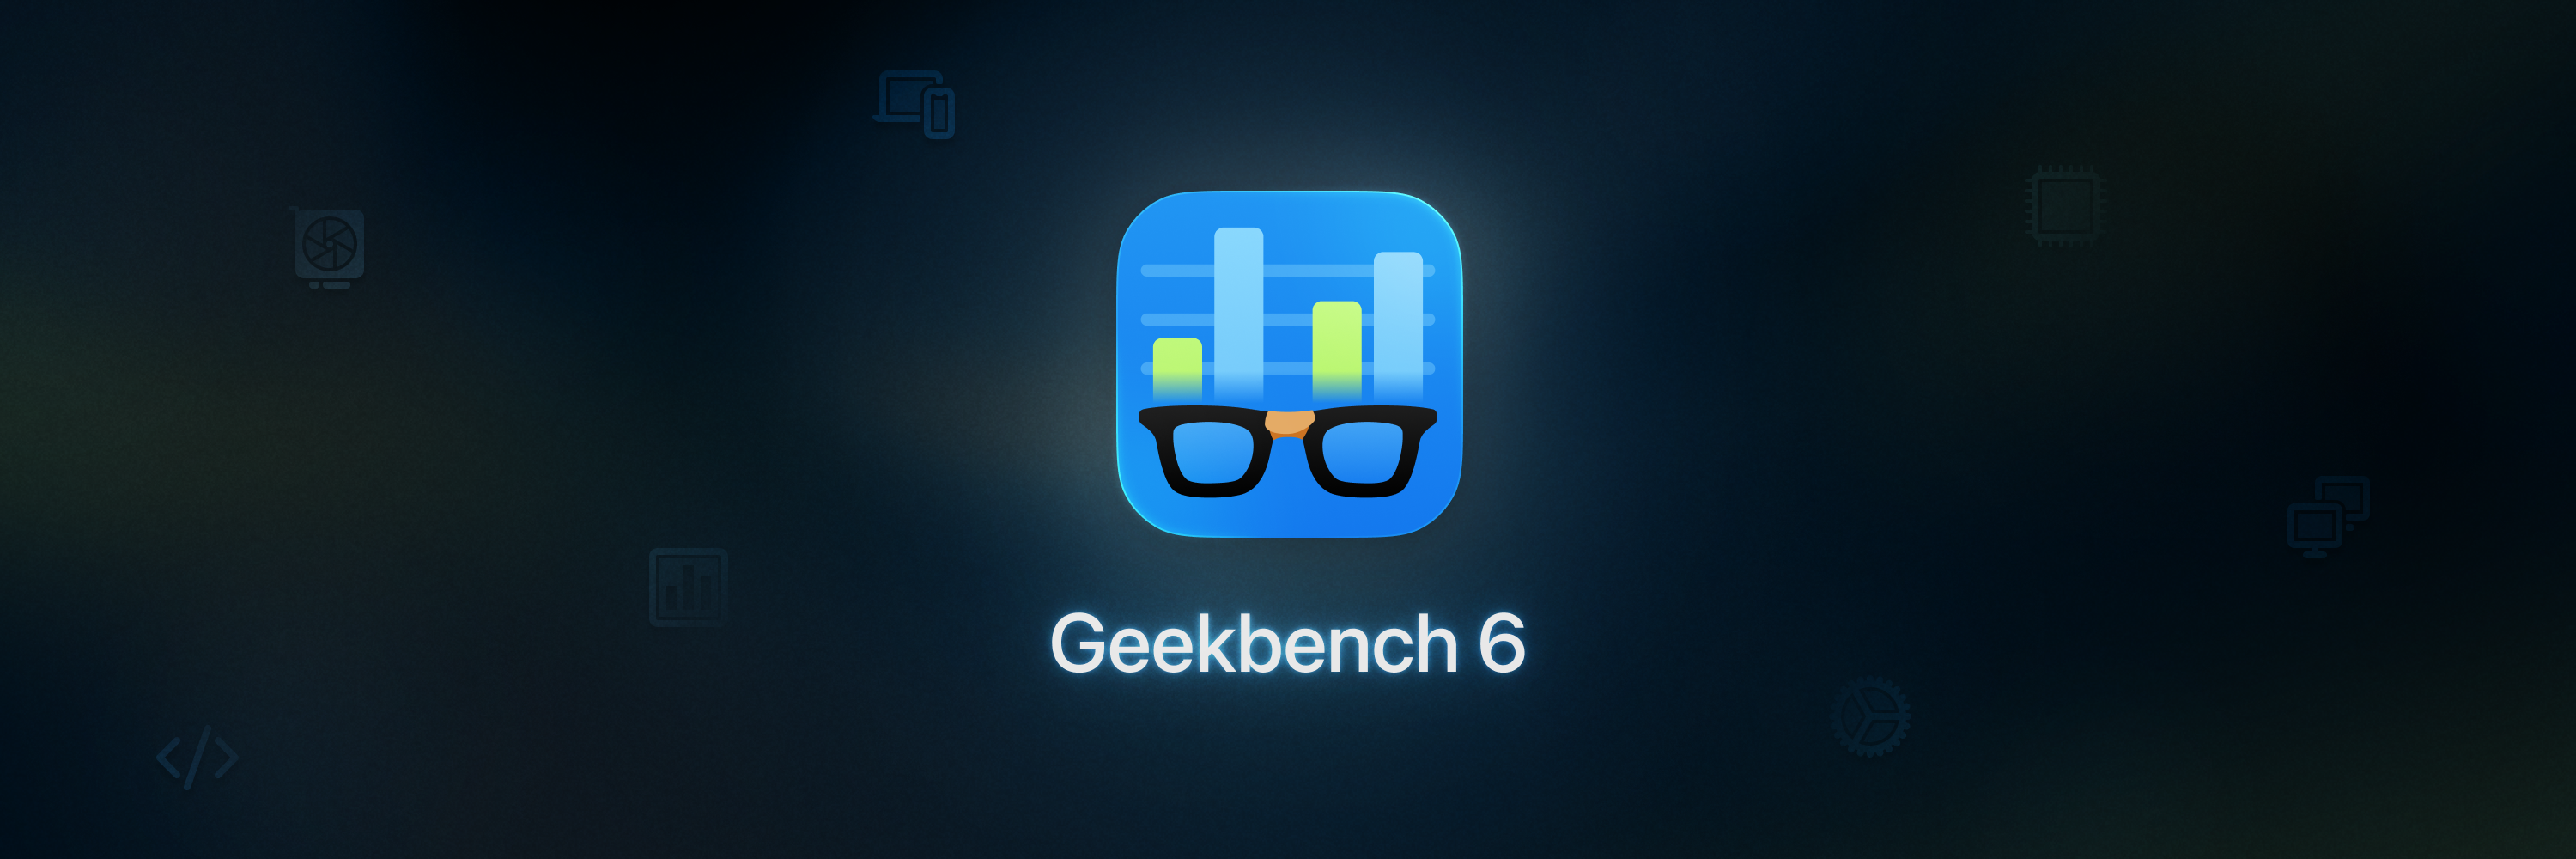 Geekbench 6 Banner